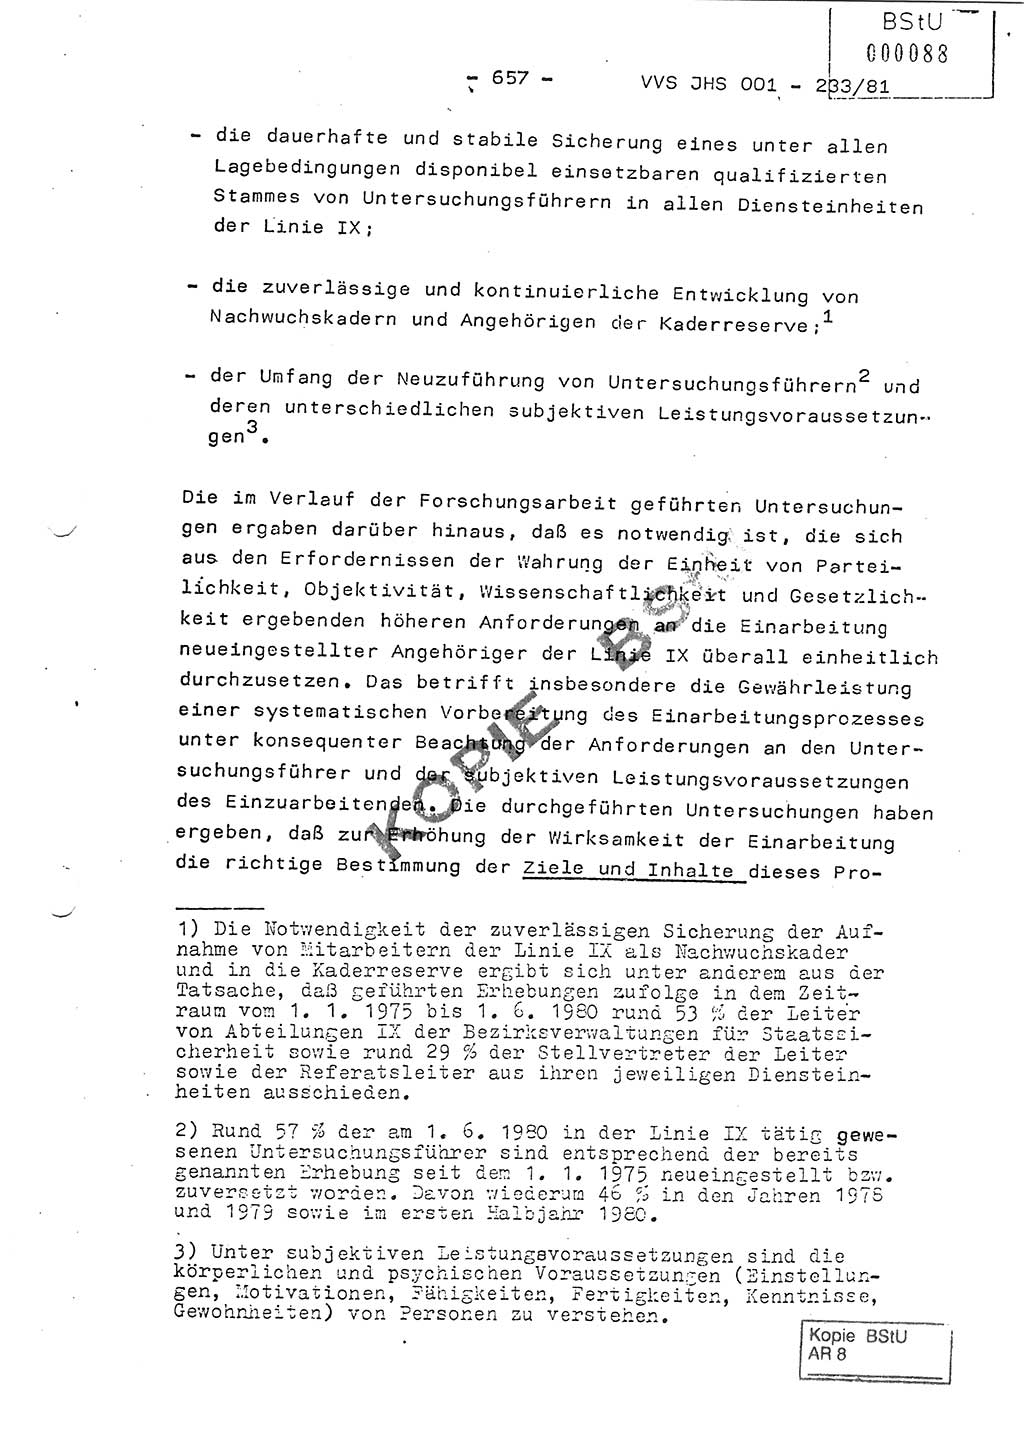 Dissertation Oberstleutnant Horst Zank (JHS), Oberstleutnant Dr. Karl-Heinz Knoblauch (JHS), Oberstleutnant Gustav-Adolf Kowalewski (HA Ⅸ), Oberstleutnant Wolfgang Plötner (HA Ⅸ), Ministerium für Staatssicherheit (MfS) [Deutsche Demokratische Republik (DDR)], Juristische Hochschule (JHS), Vertrauliche Verschlußsache (VVS) o001-233/81, Potsdam 1981, Blatt 657 (Diss. MfS DDR JHS VVS o001-233/81 1981, Bl. 657)